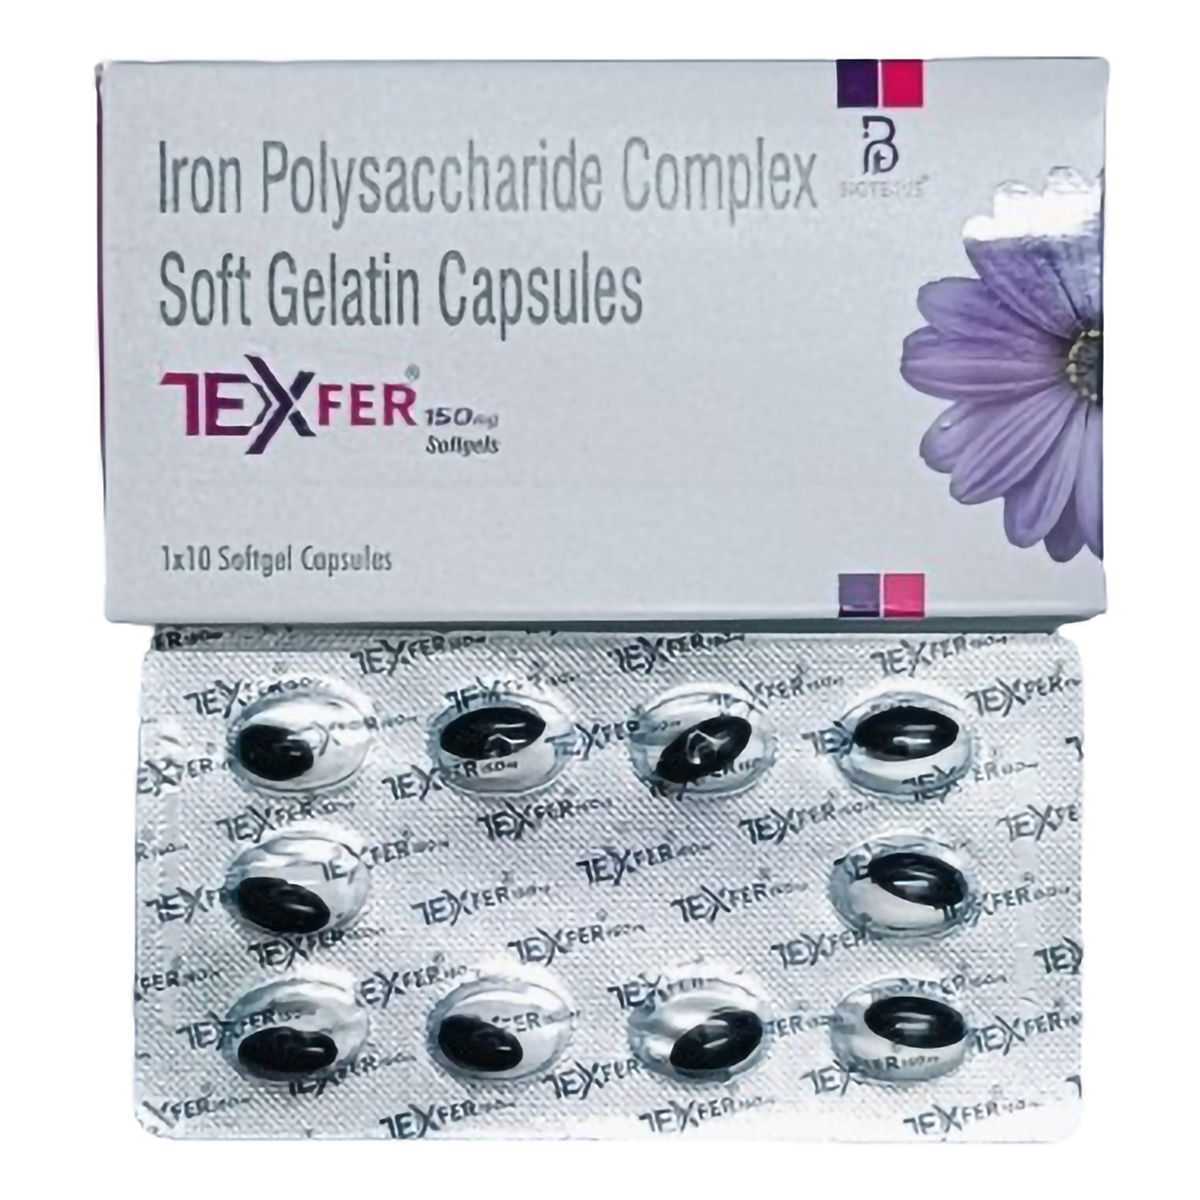 Buy Texfer 150 mg Softgel Capsule 10's Online